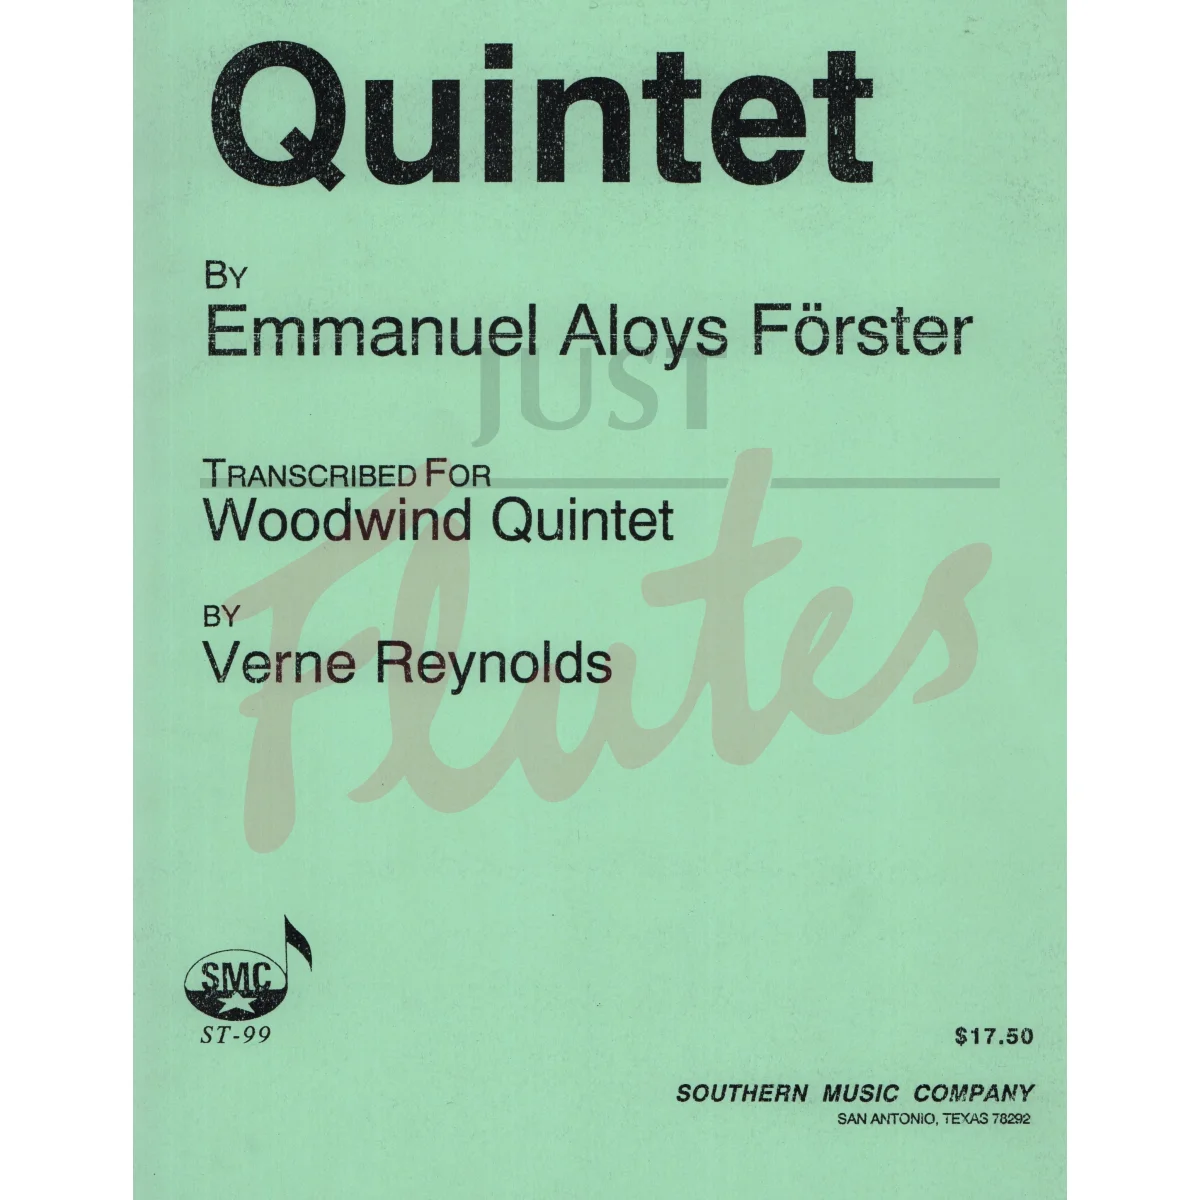 Quintet arranged for Woodwind Quintet